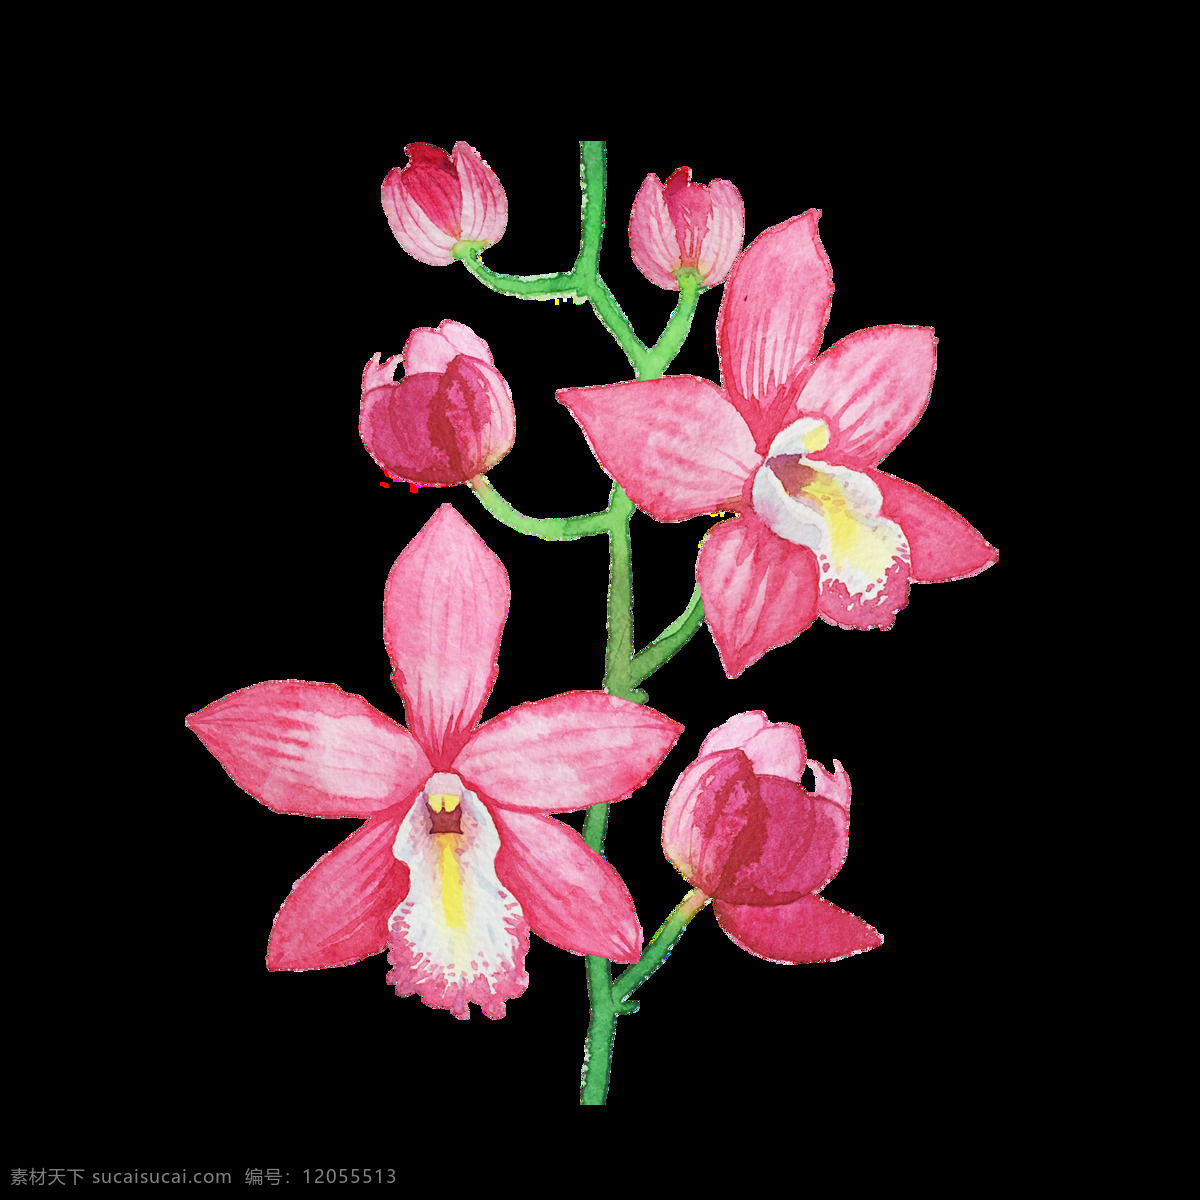 甜蜜 粉色 花卉 透明 装饰 抠图专用 设计素材